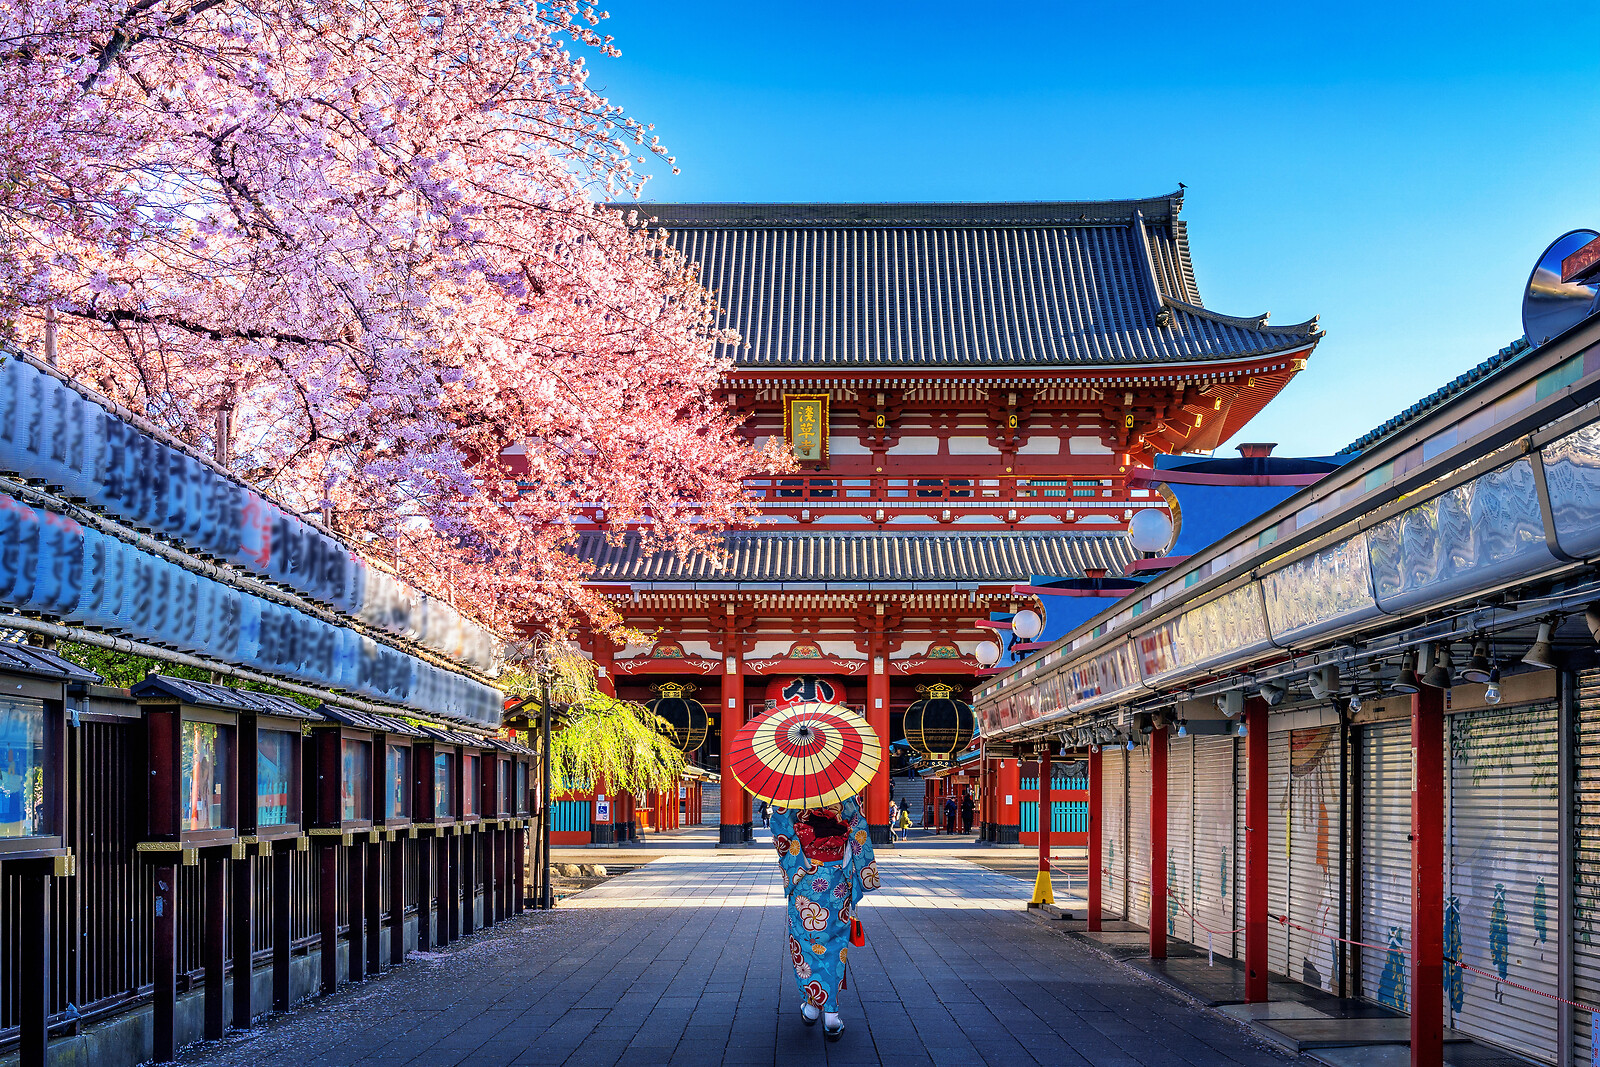 Se 3 Dages Ophold I Tokyo - Rejse og Ophold - GO DREAM hos GO DREAM DK